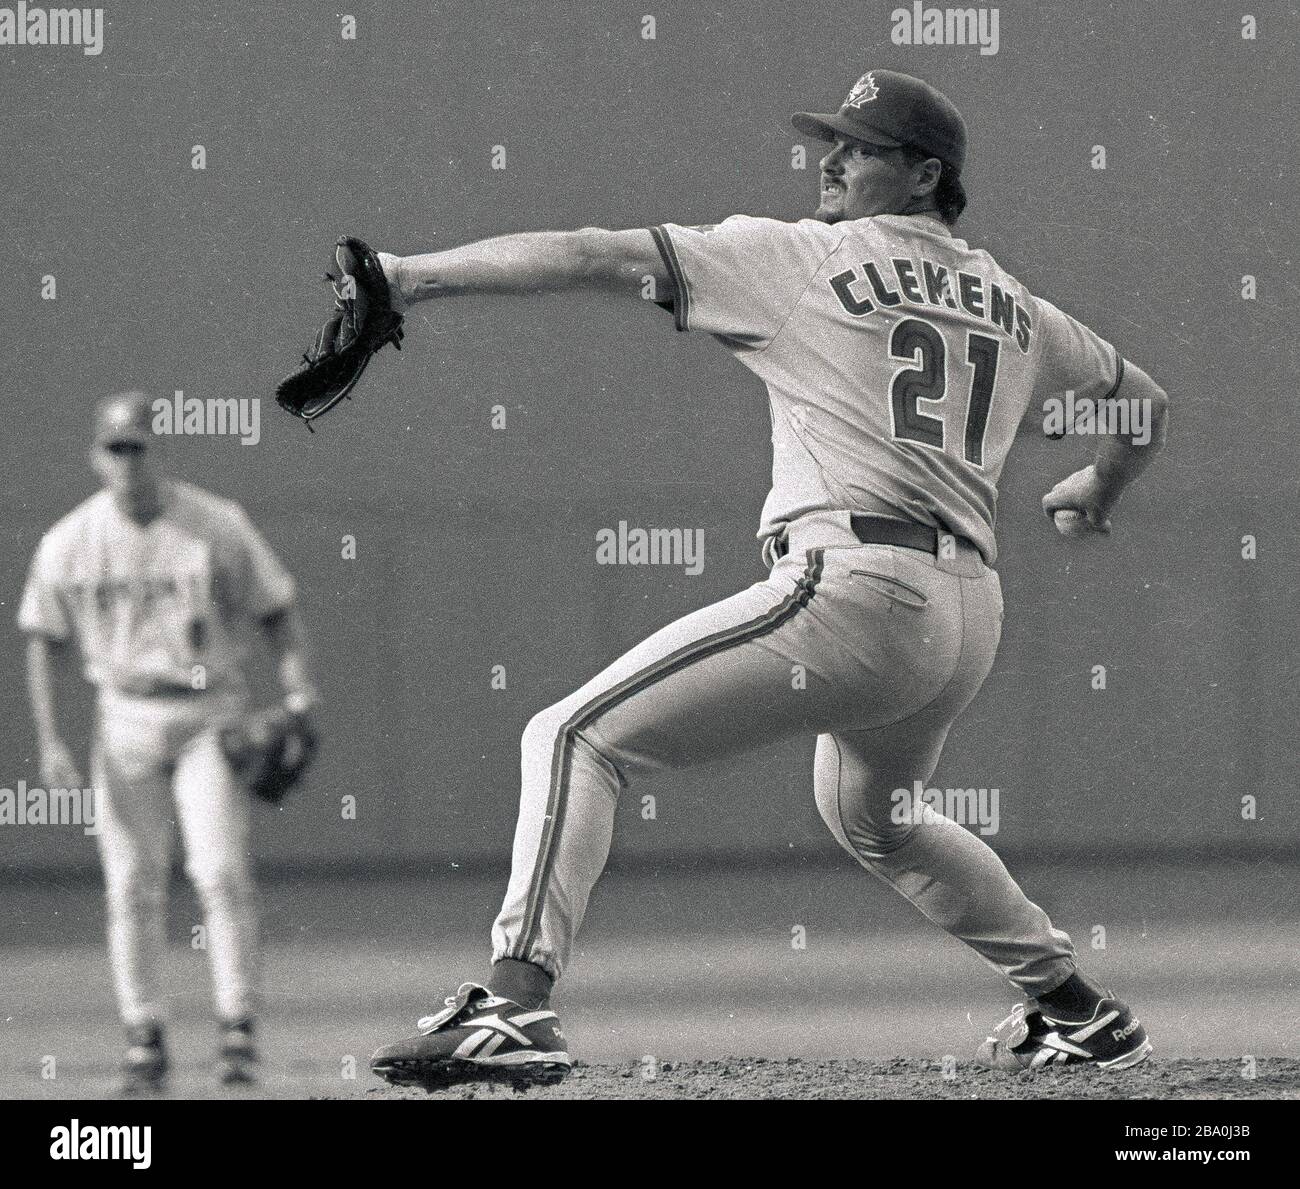 Il lanciatore Toronto Blue Jays Roger Clemens ha lanciato la sua palla veloce contro il Boston Red Sox al Fenway Park a Boston ma USA 1997 foto di Bill belknap Foto Stock